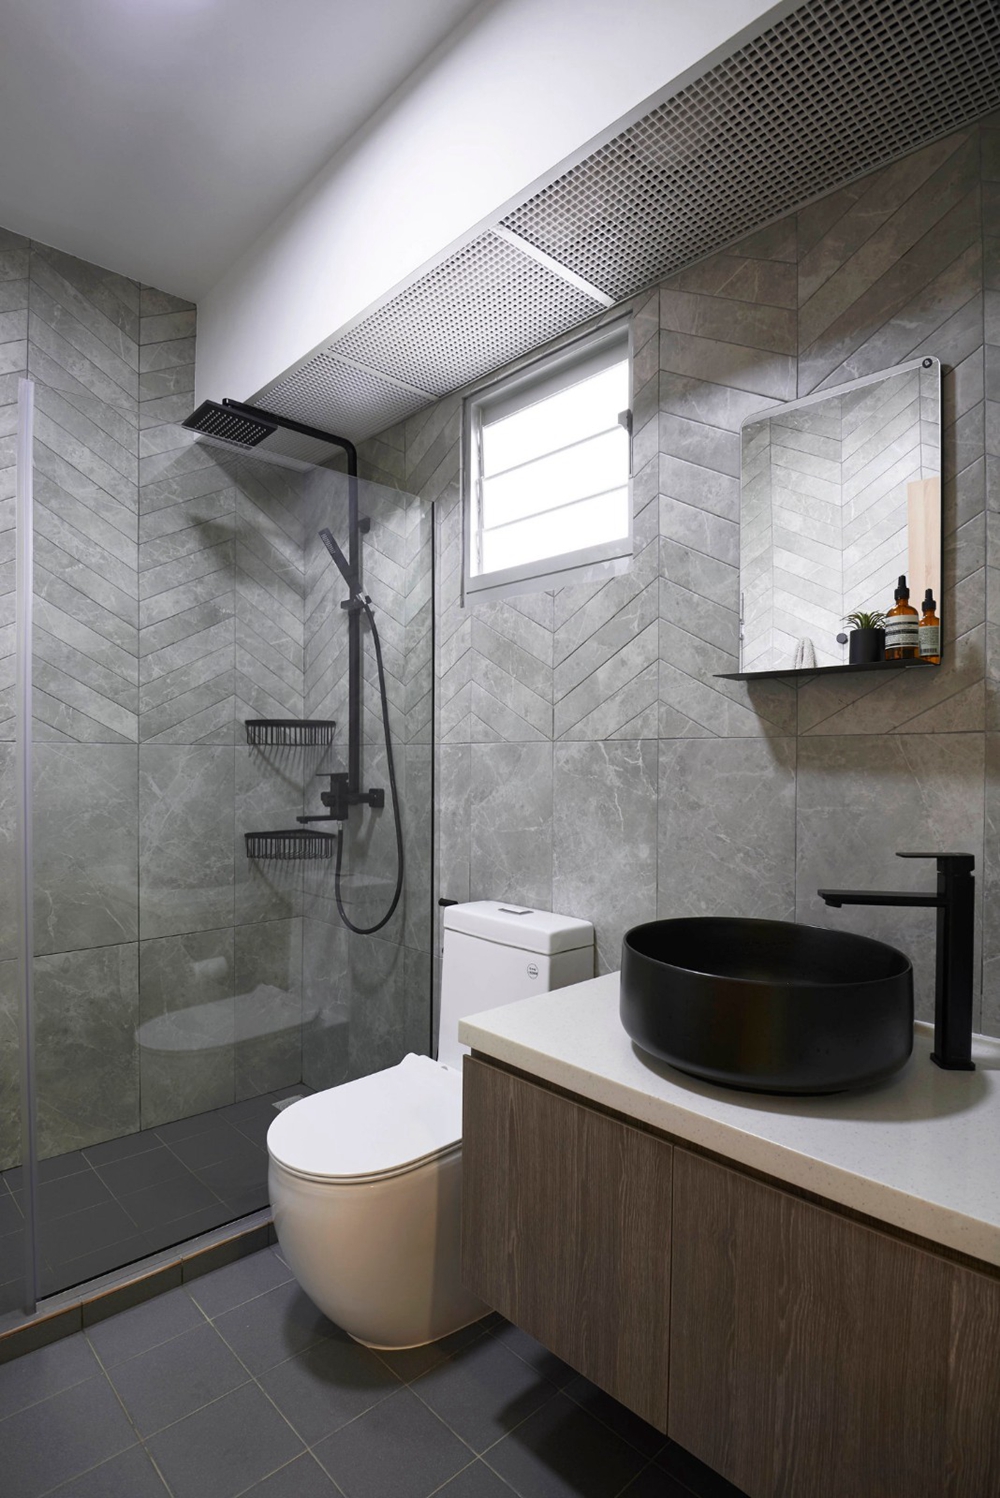 卫浴空间紧凑，采用玻璃做干湿分离，白色洁具在灰色背景中具有美化装饰作用。